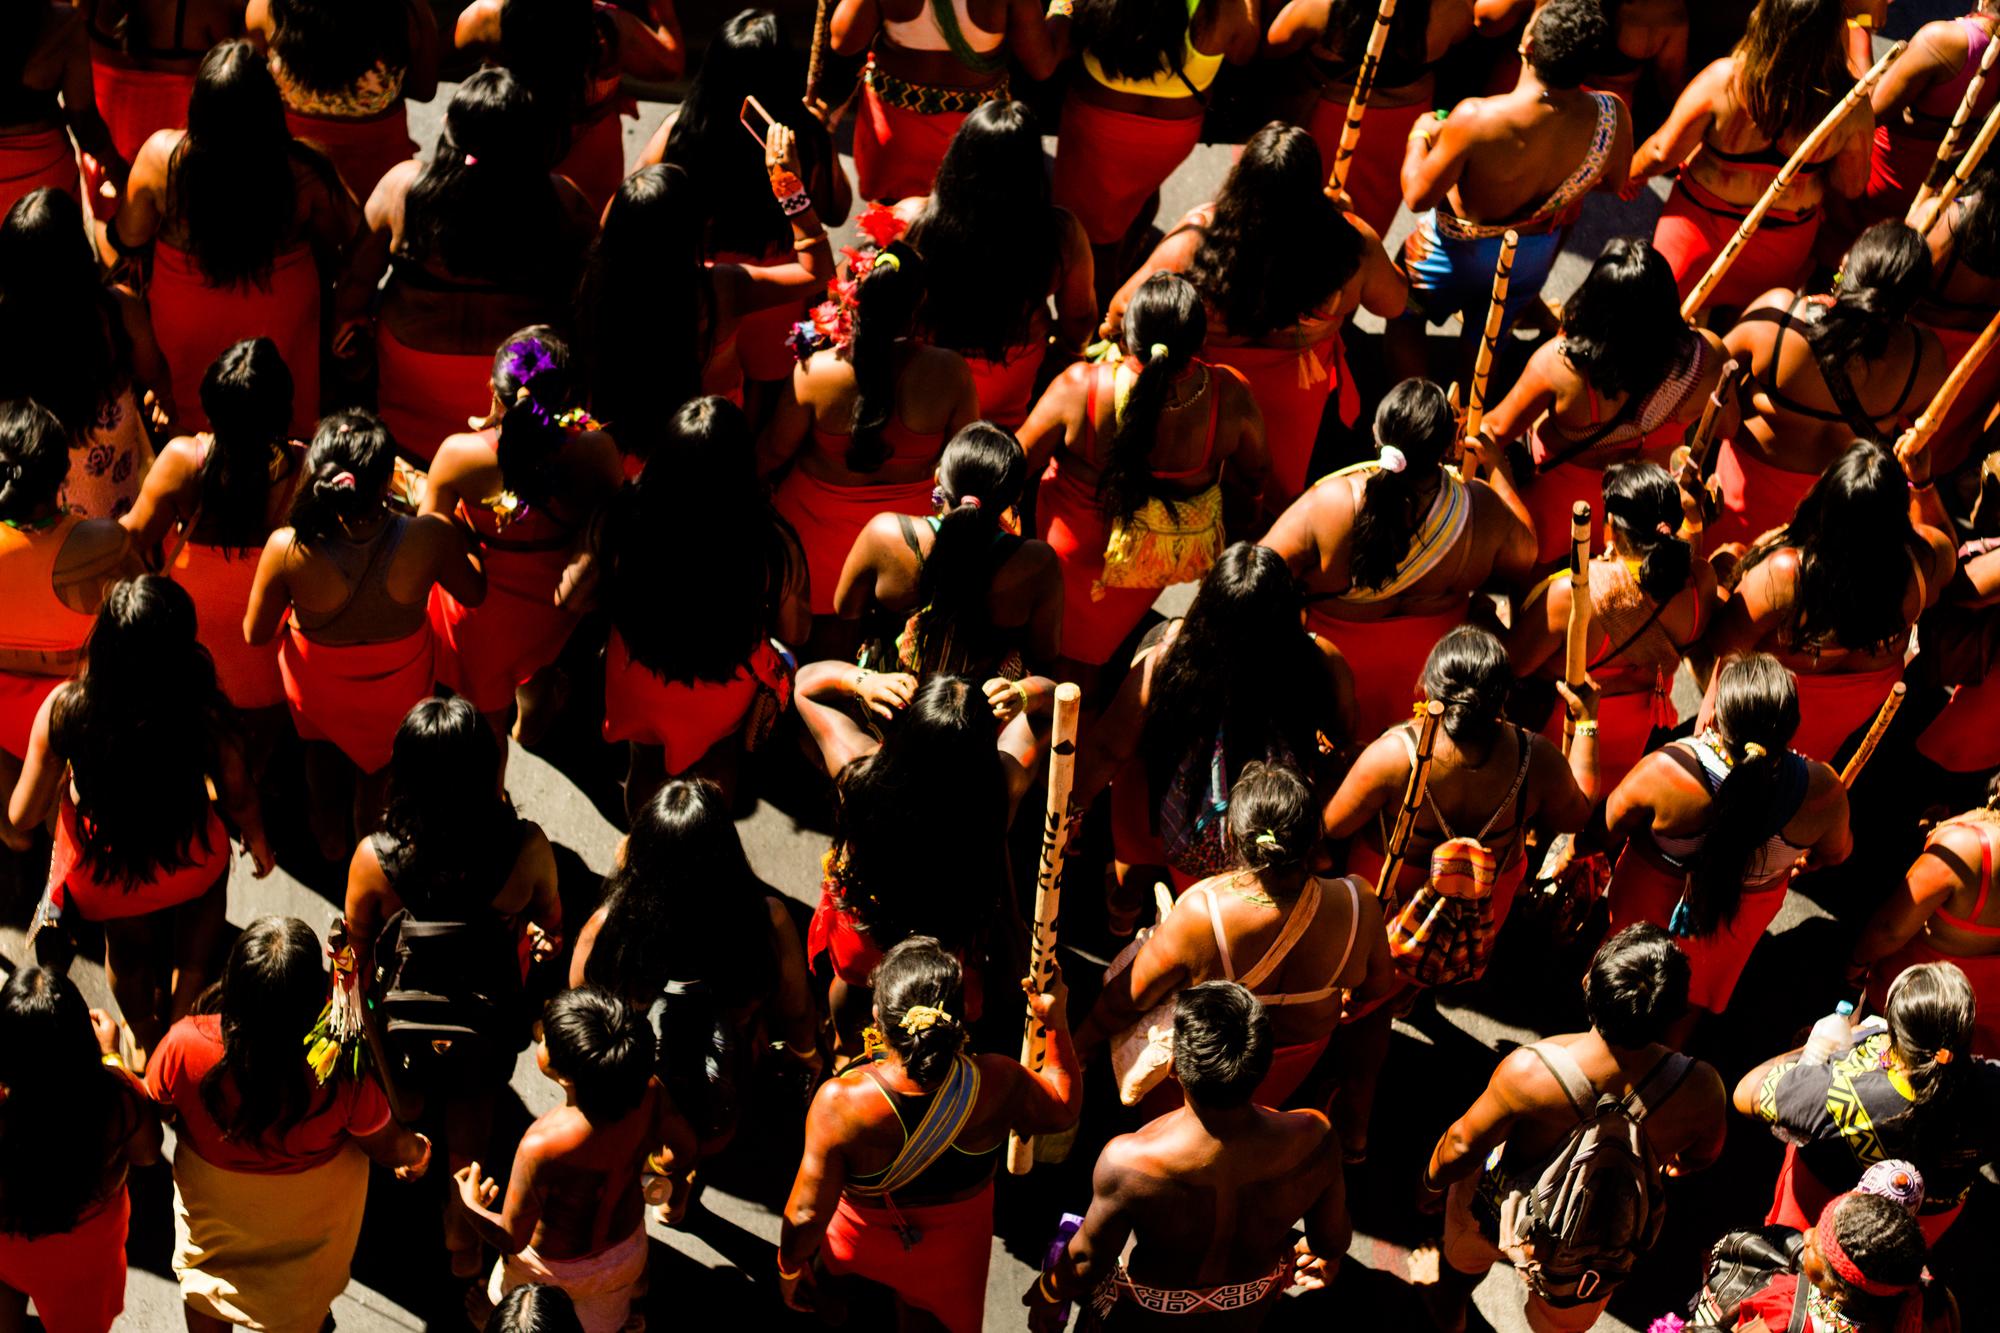 Marcha indígena en Brasil mujeres vista aerea